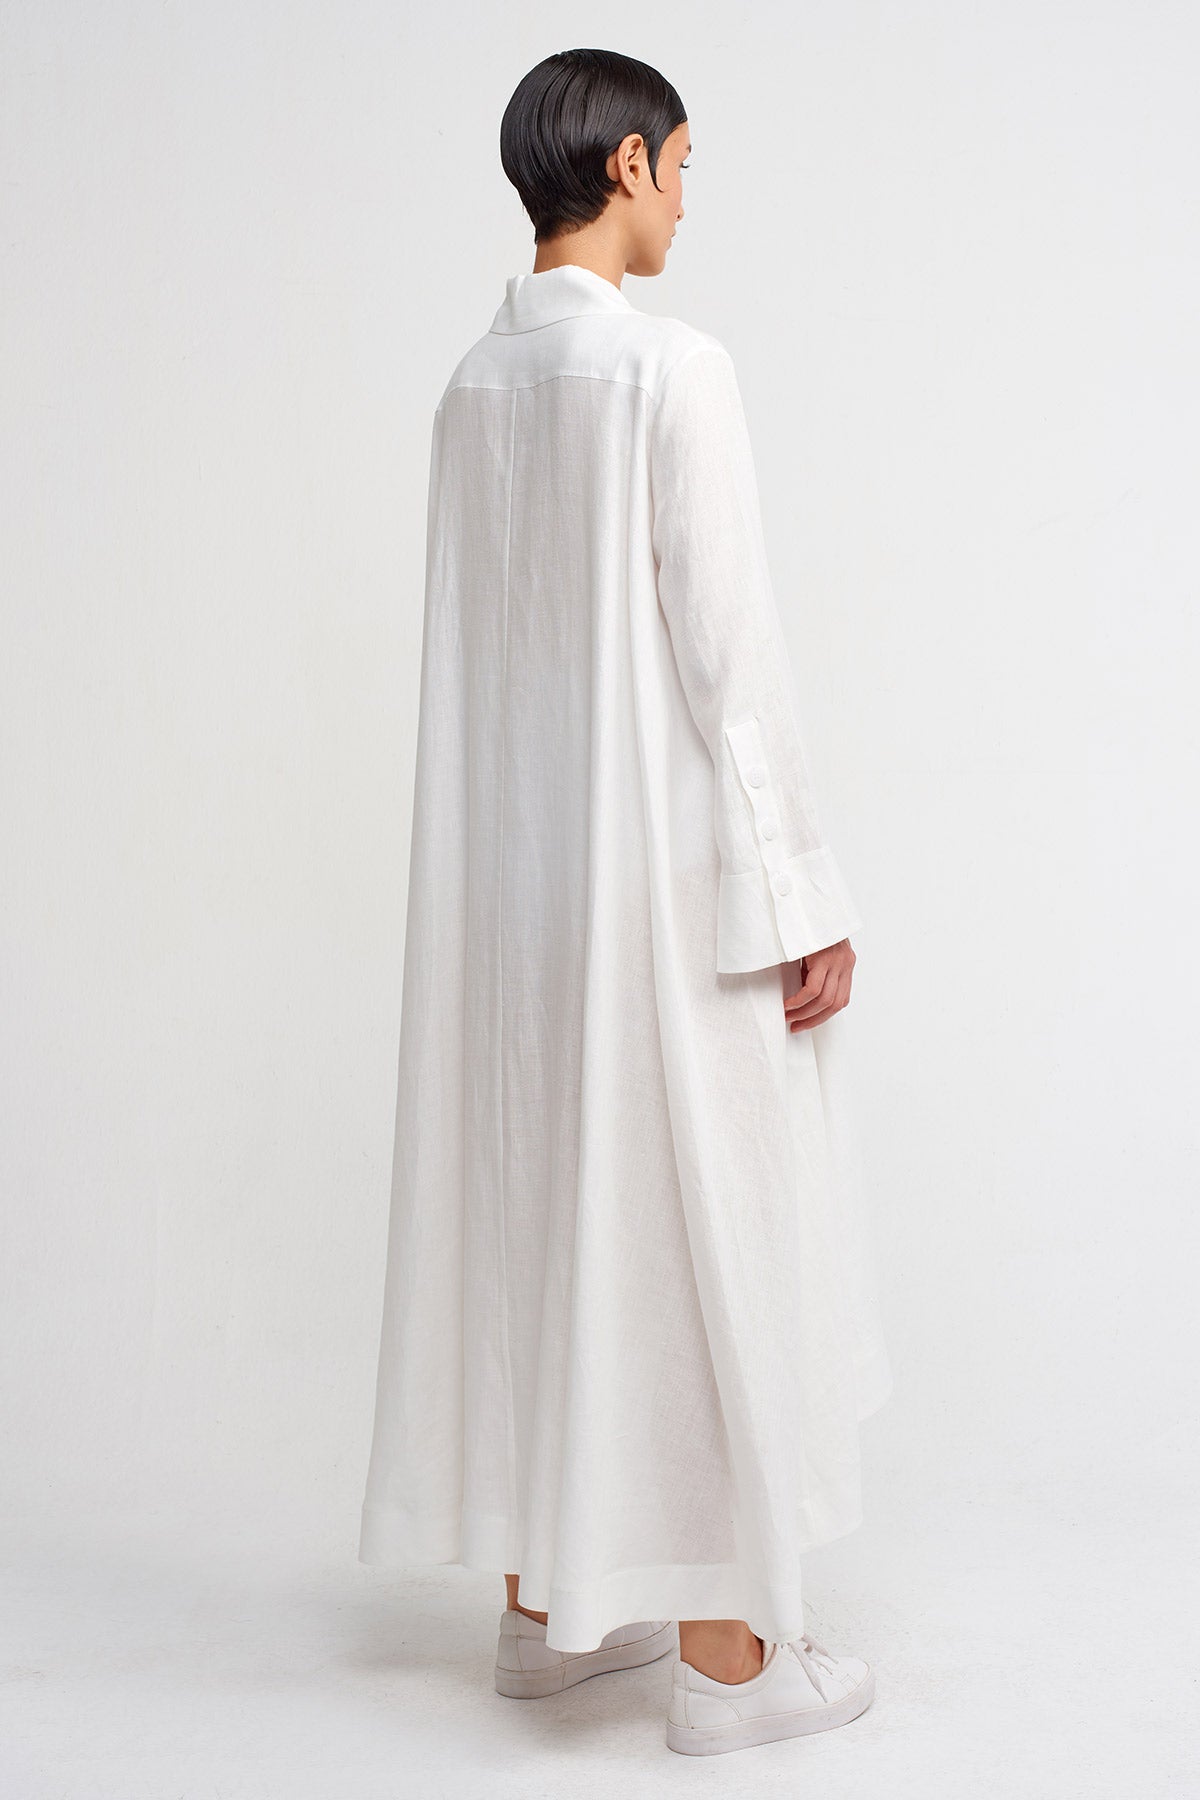 Kırık Beyaz Çift Düğmeli Ceket Elbise-Y244014029